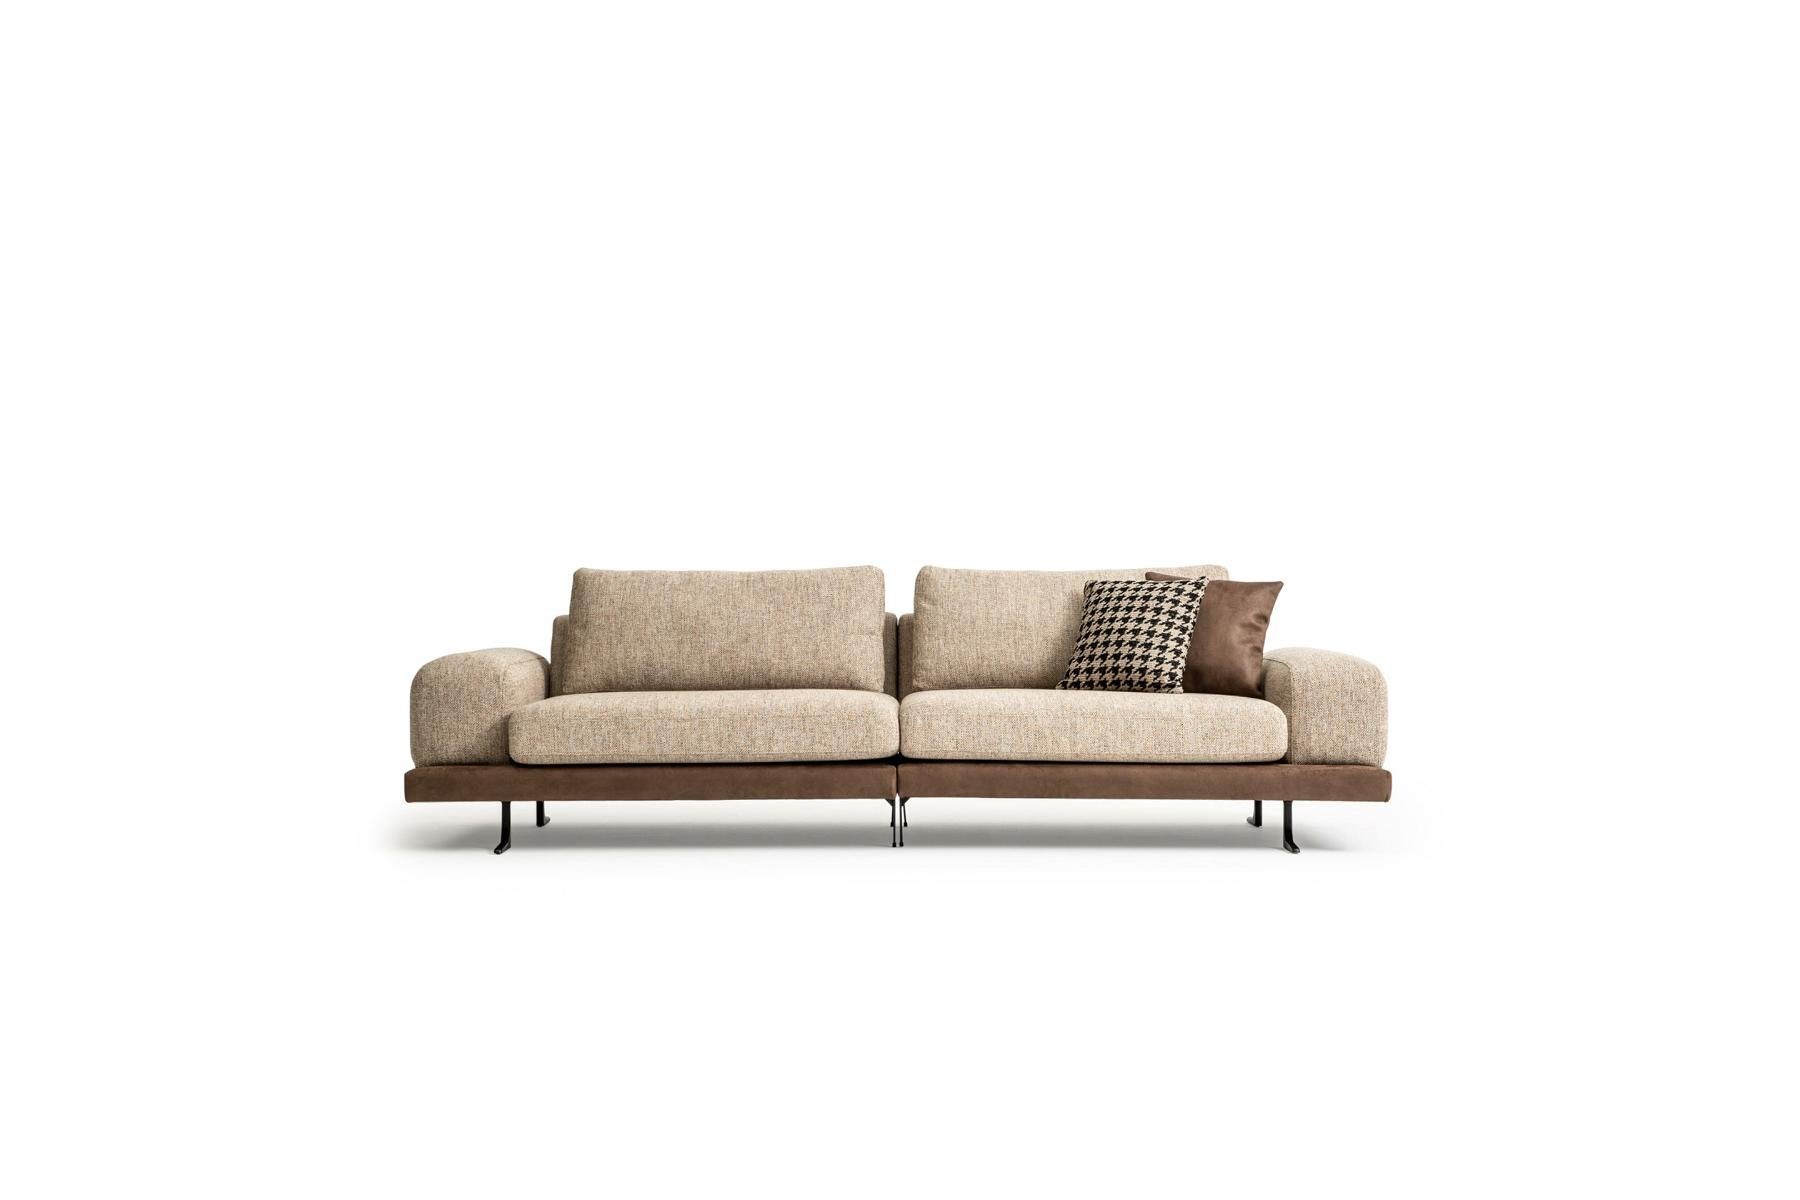 JVmoebel Sofa Beiges Sofa Luxus Dreisitzer Moderner Stil Wohnzimmer Couch, 2 Teile, Made in Europe